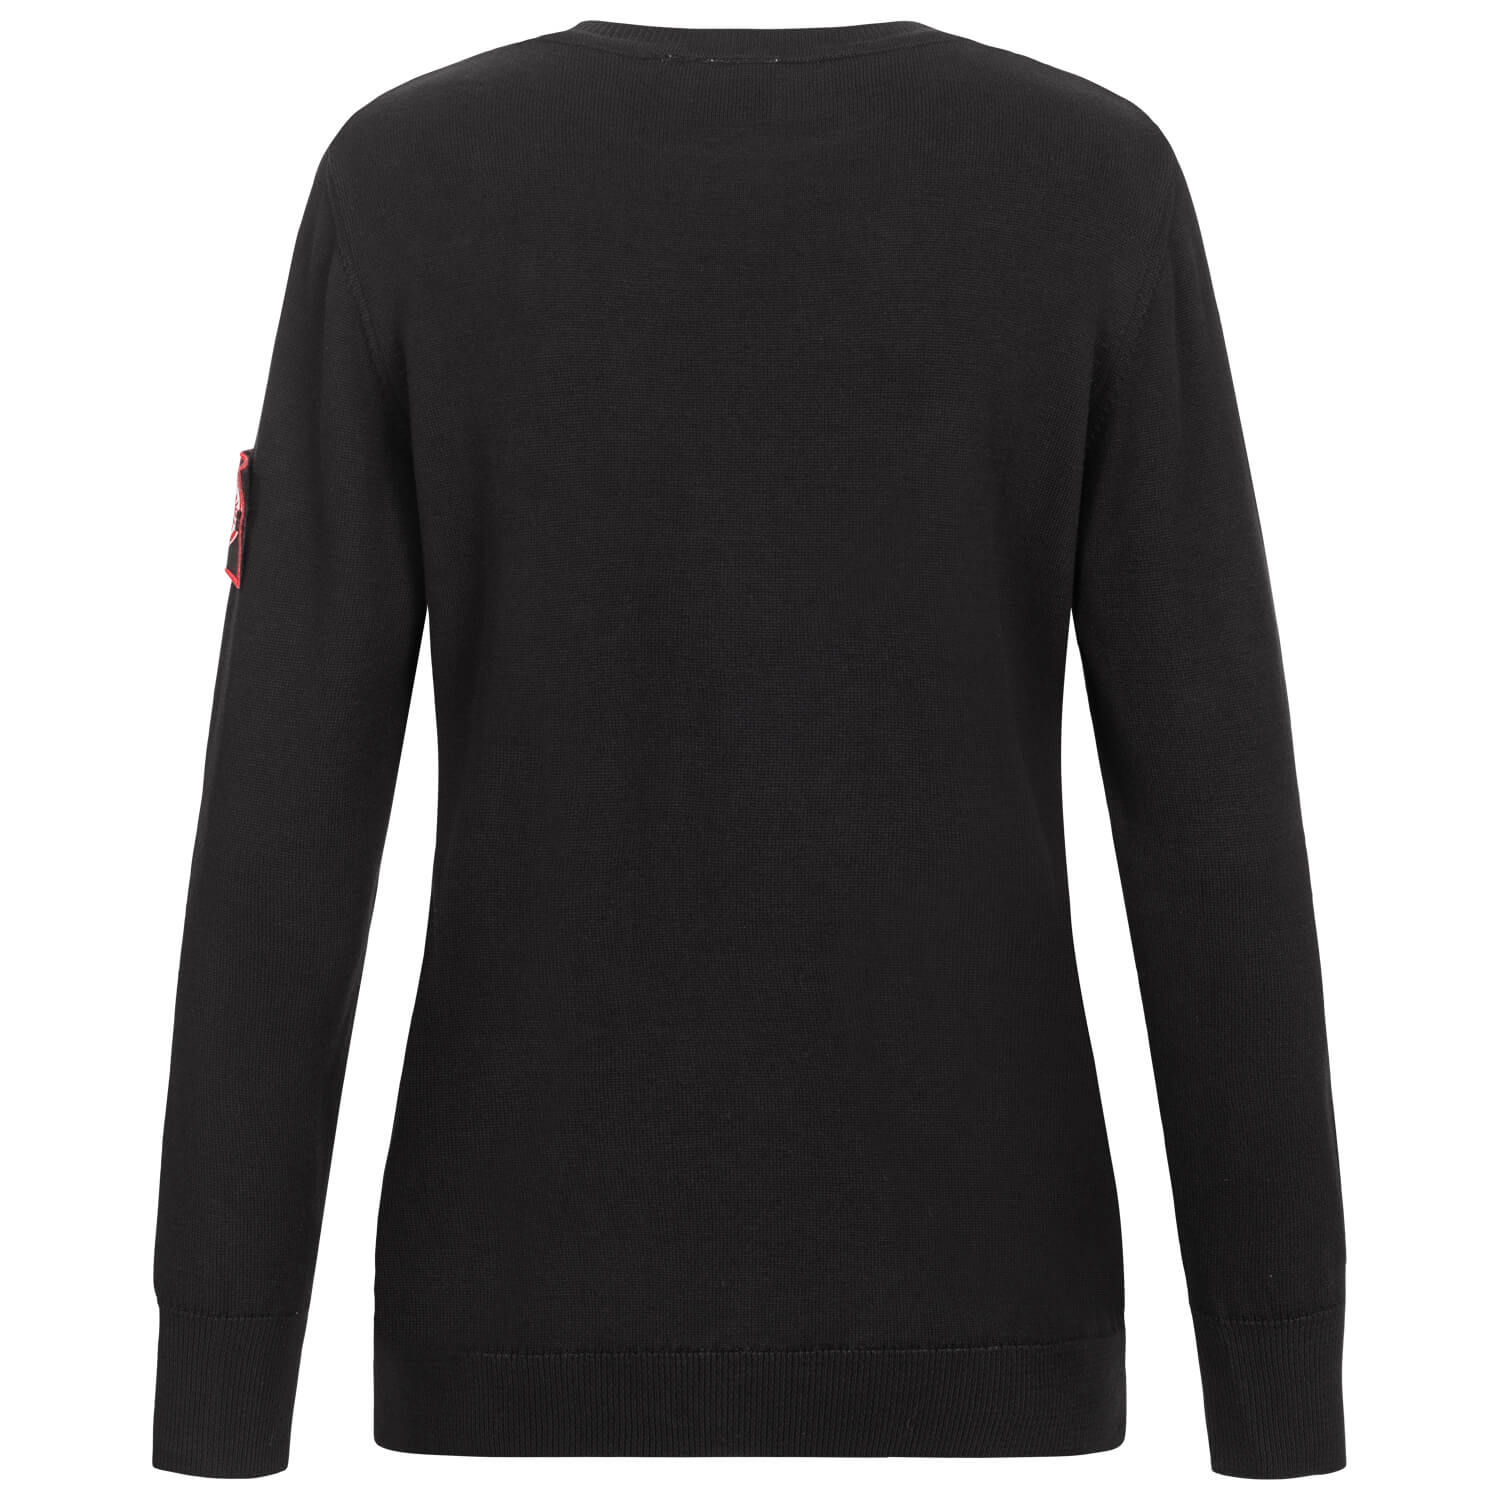 Bild 2: Damen-Pullover Logo schwarz